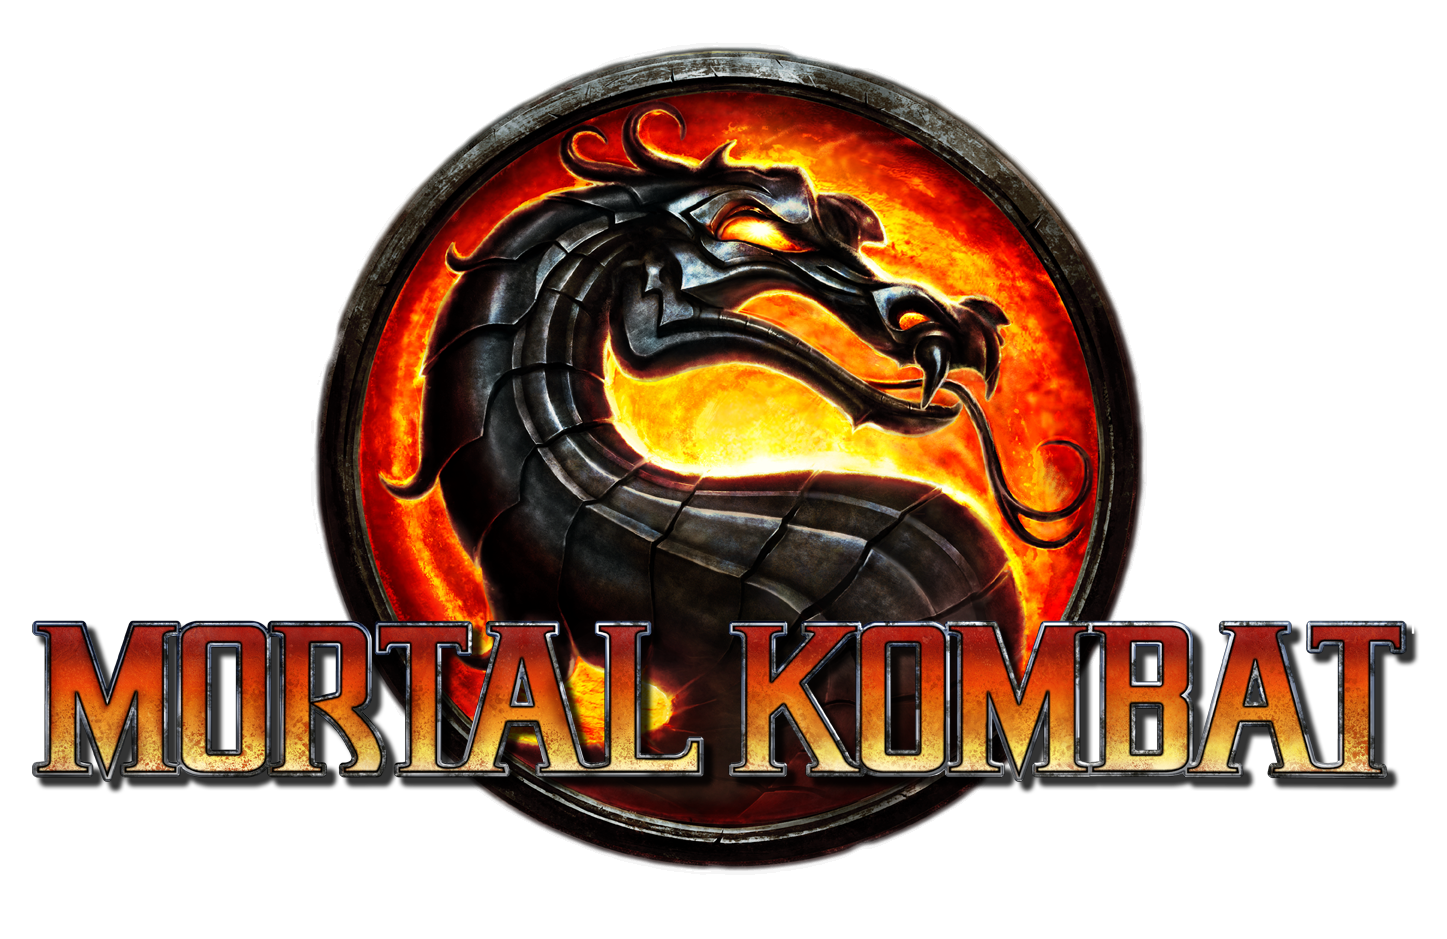 โลโก้ Mortal Kombat พื้นหลังภาพ PNG